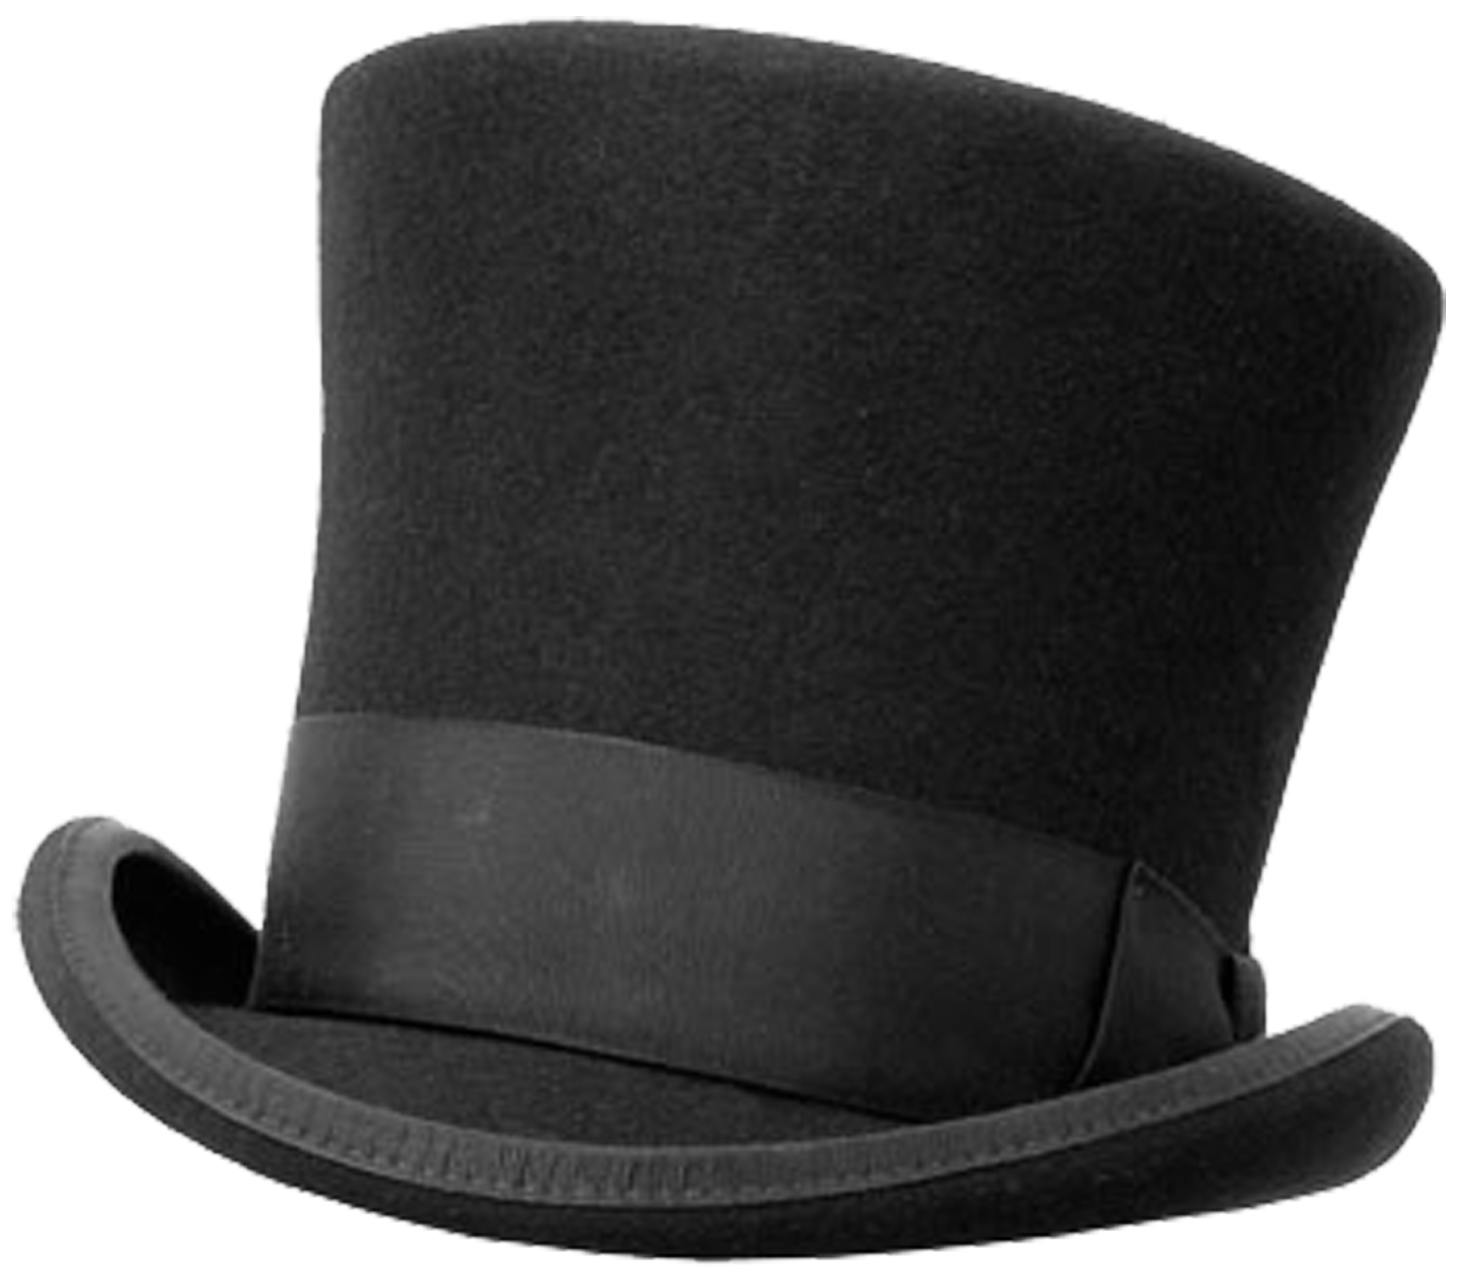 Цилиндр одежда. Боливар шляпа 19 век. Боливар головной убор. Боливар шляпа Пушкин. Боливар это широкополая шляпа.